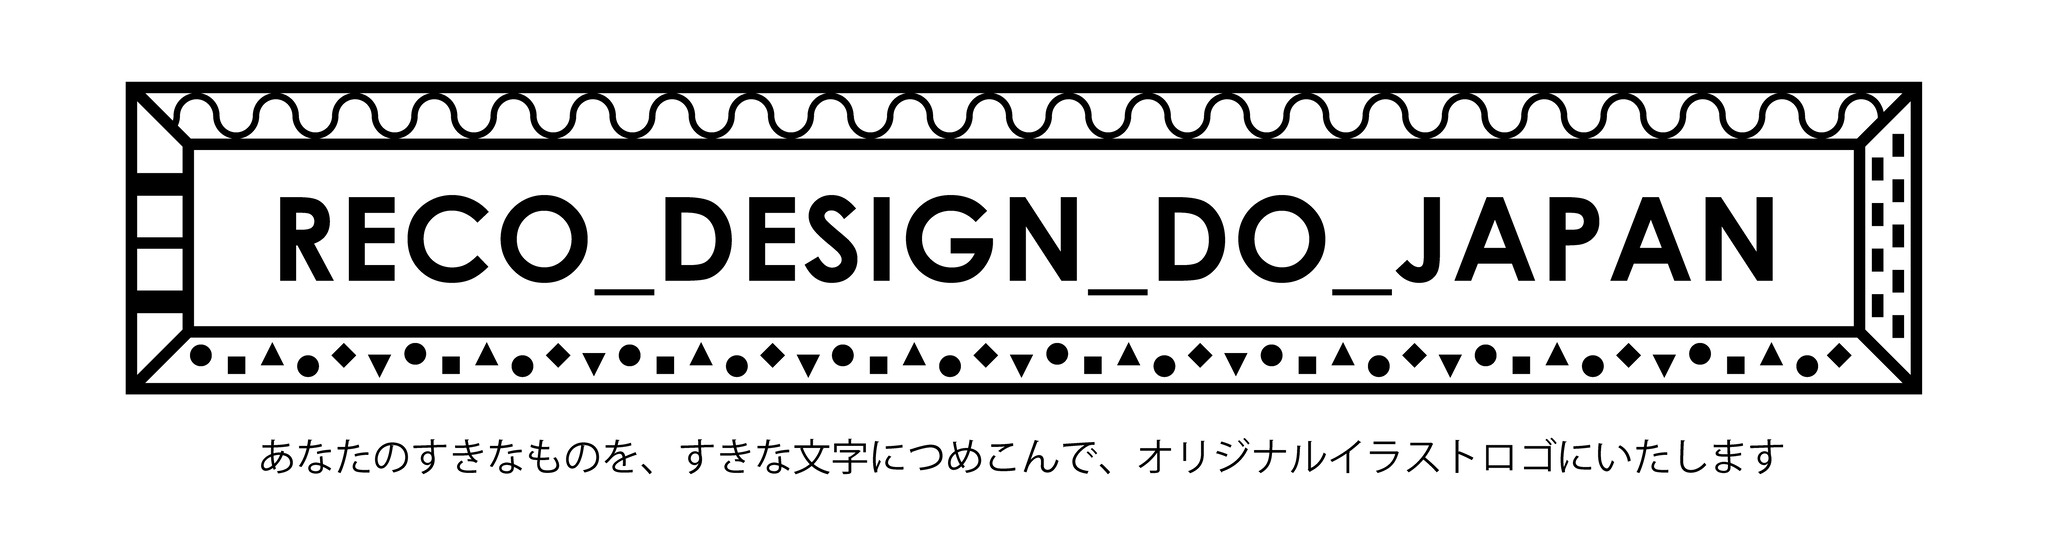 RECO_DESIGN_DO_JAPAN